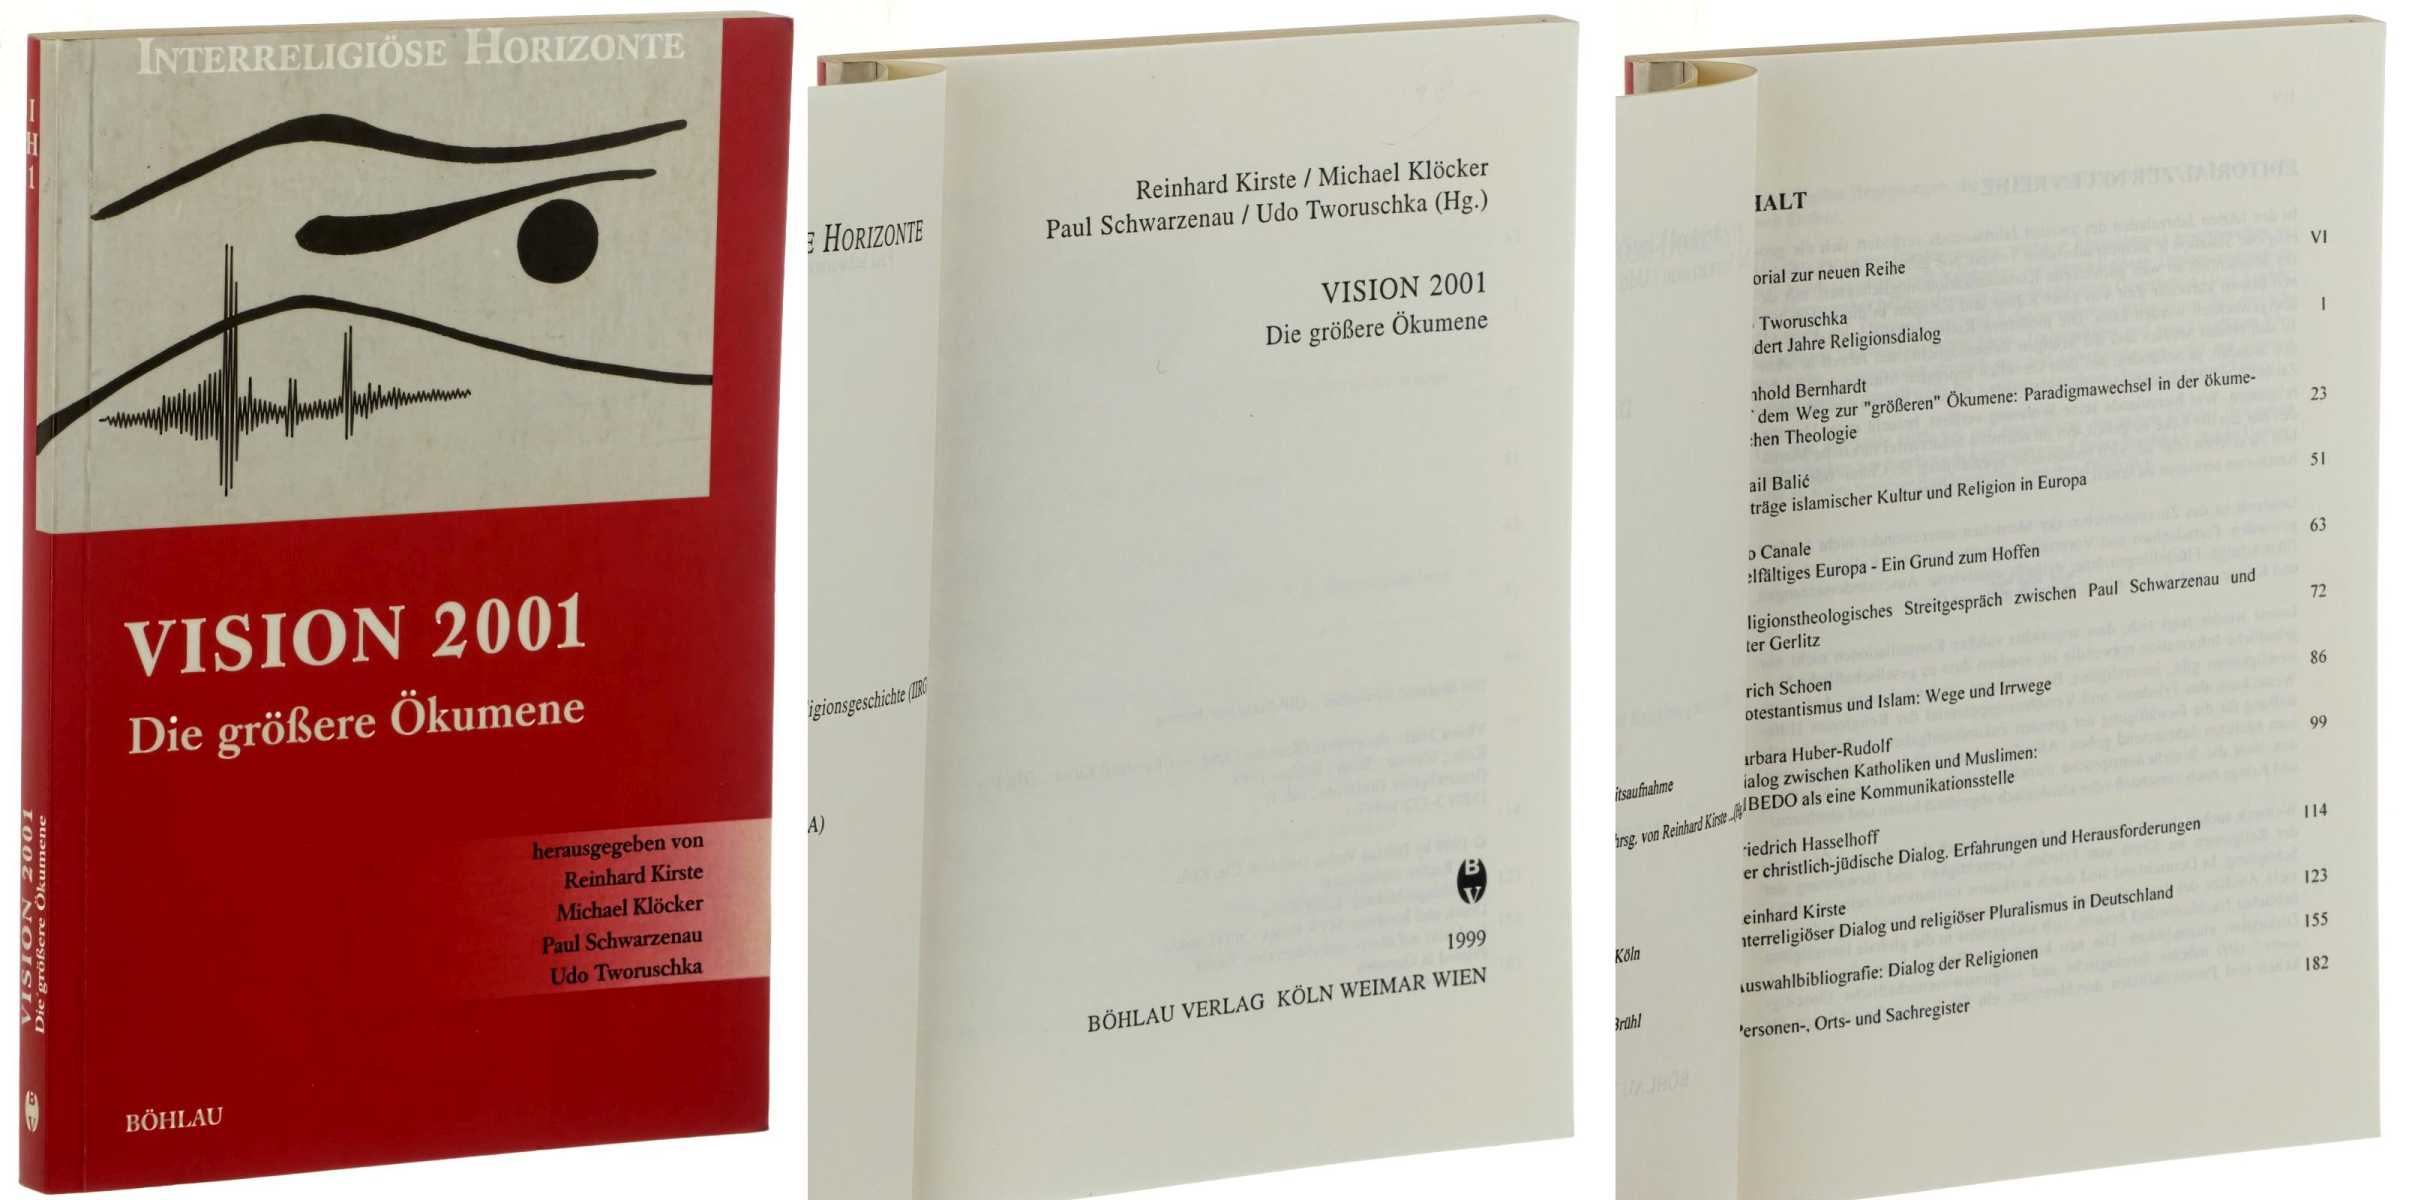   Vision 2001. Die größere Ökumene. Hrsg. von Reinhard Kirste, Michael Klöcker, Paul Schwarzenau und Udo Tworuschka. 